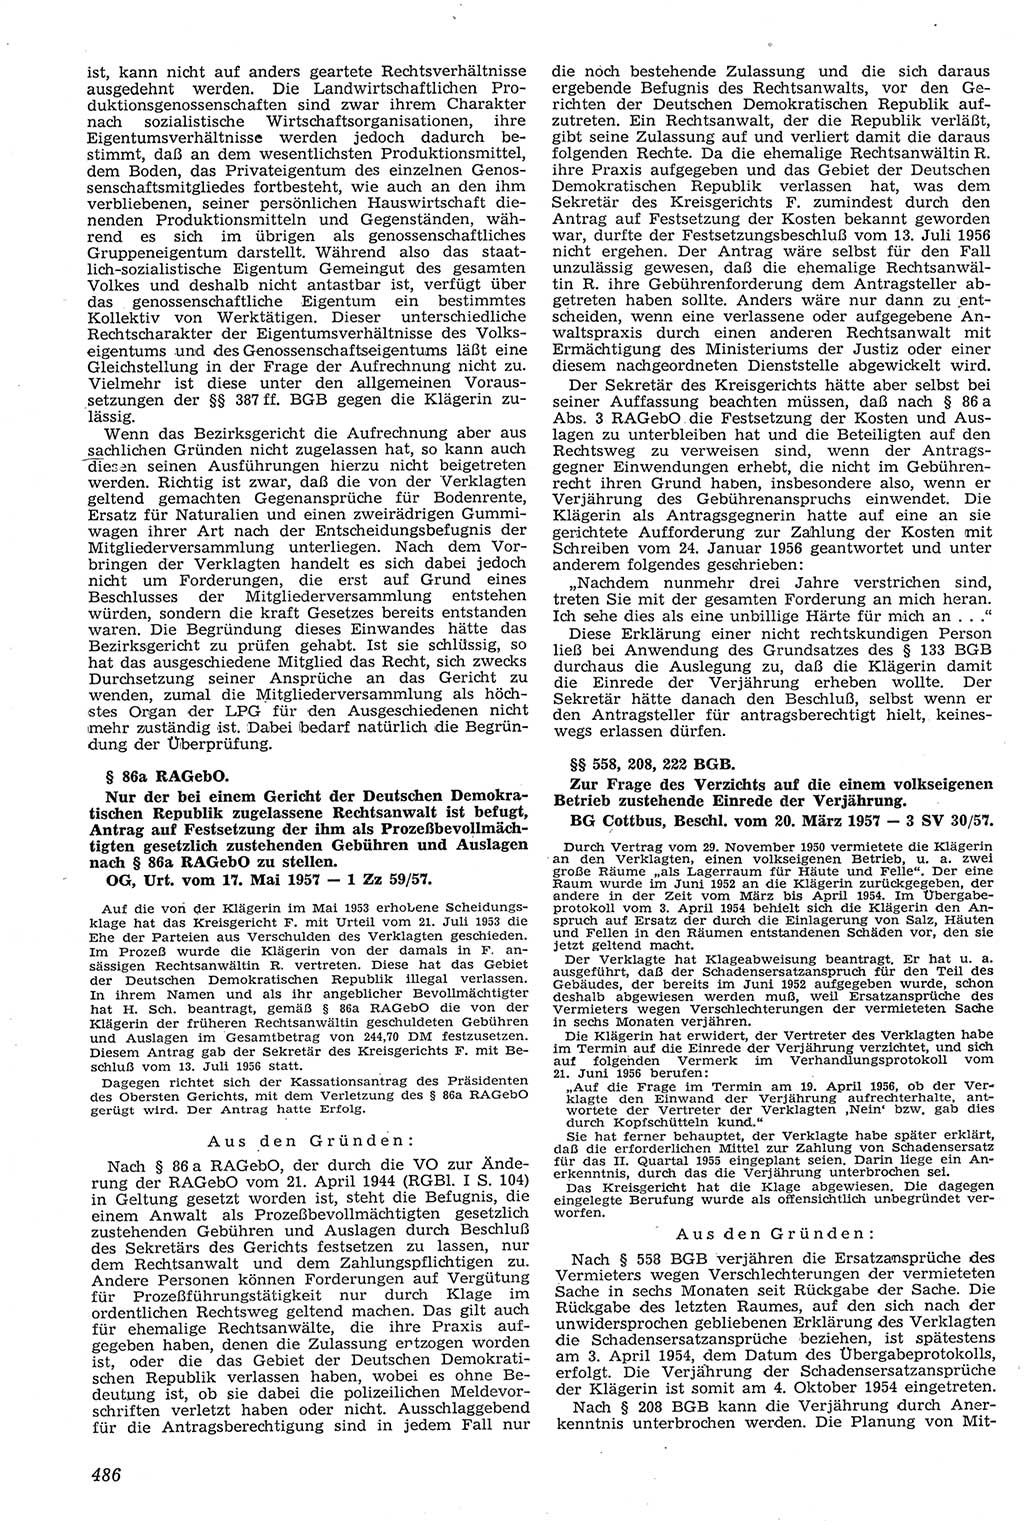 Neue Justiz (NJ), Zeitschrift für Recht und Rechtswissenschaft [Deutsche Demokratische Republik (DDR)], 11. Jahrgang 1957, Seite 486 (NJ DDR 1957, S. 486)